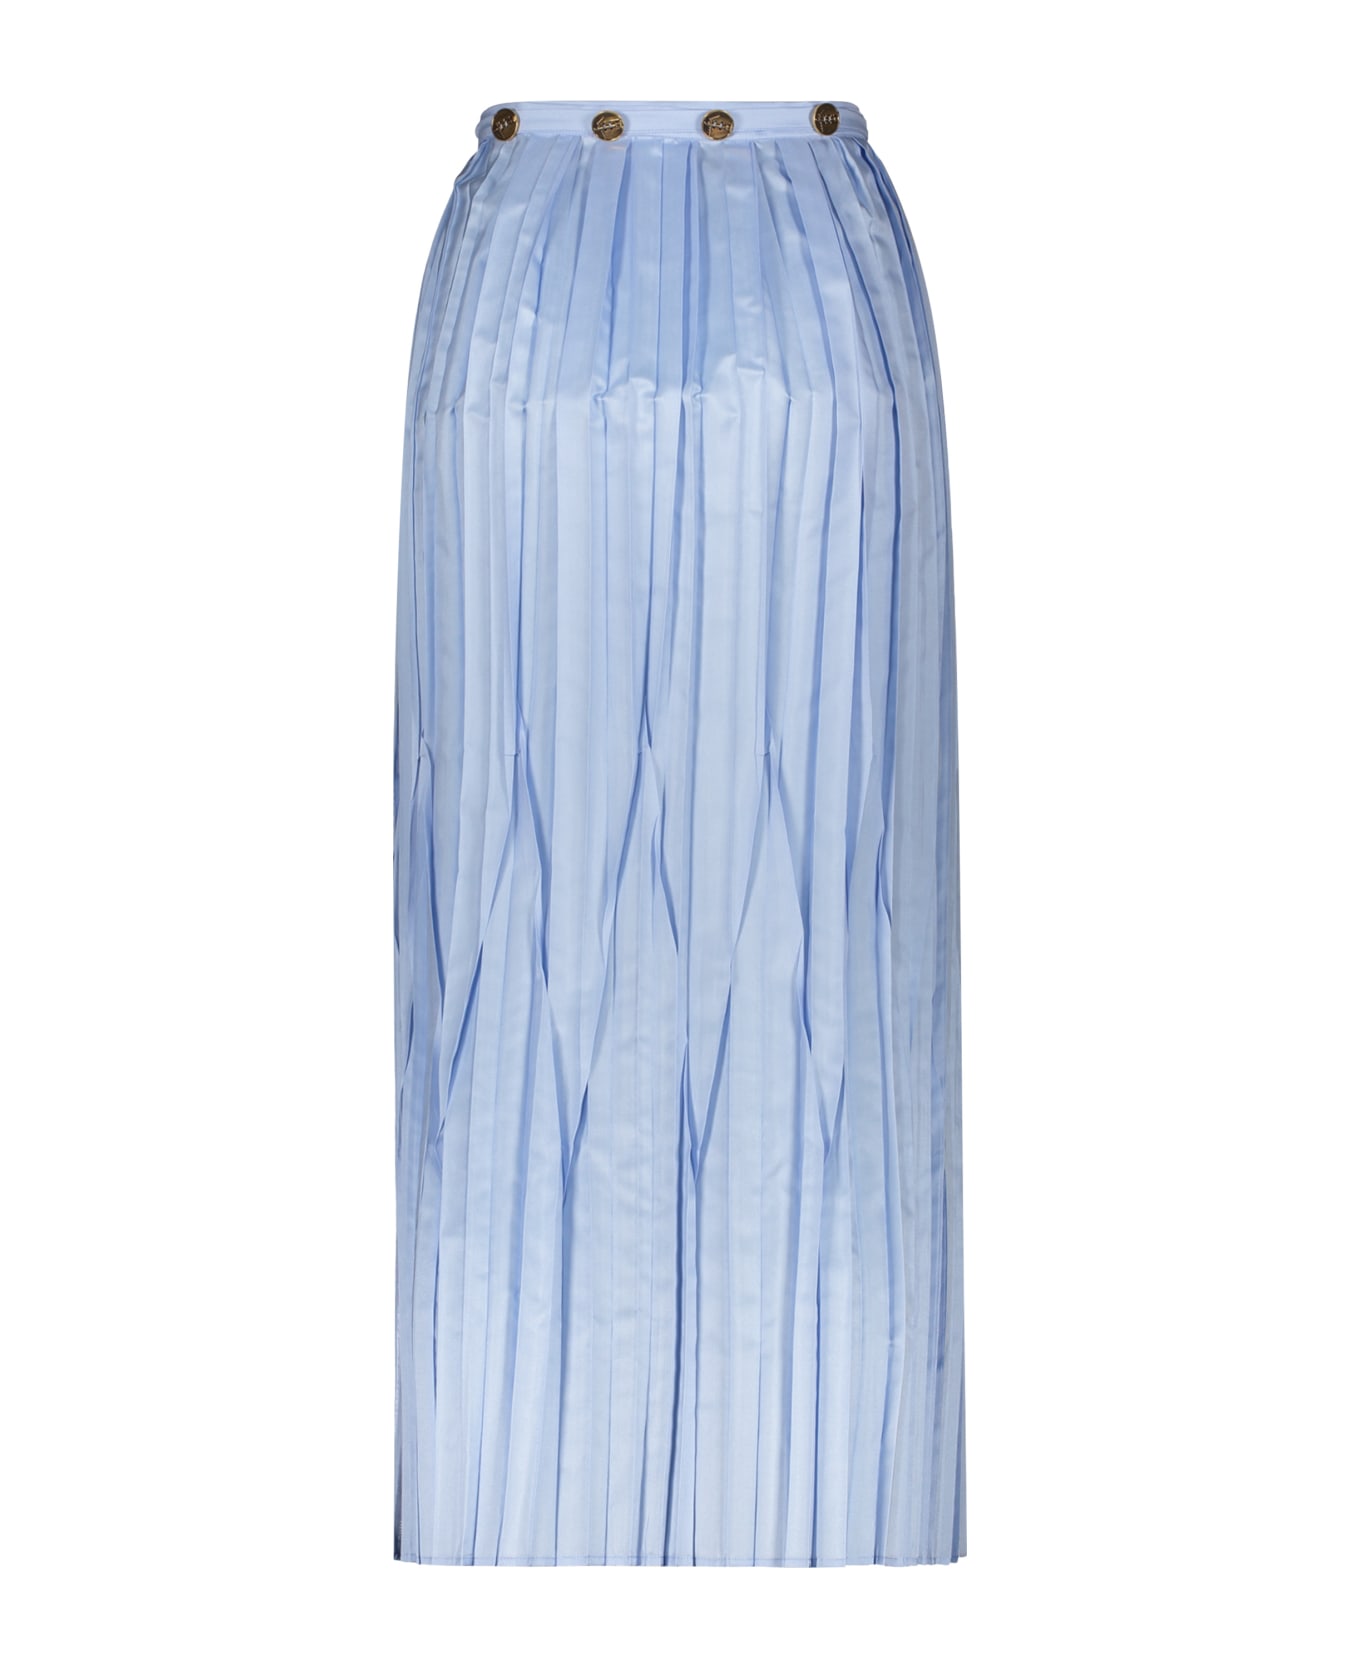 Ferragamo Pleated Skirt - Light Blue